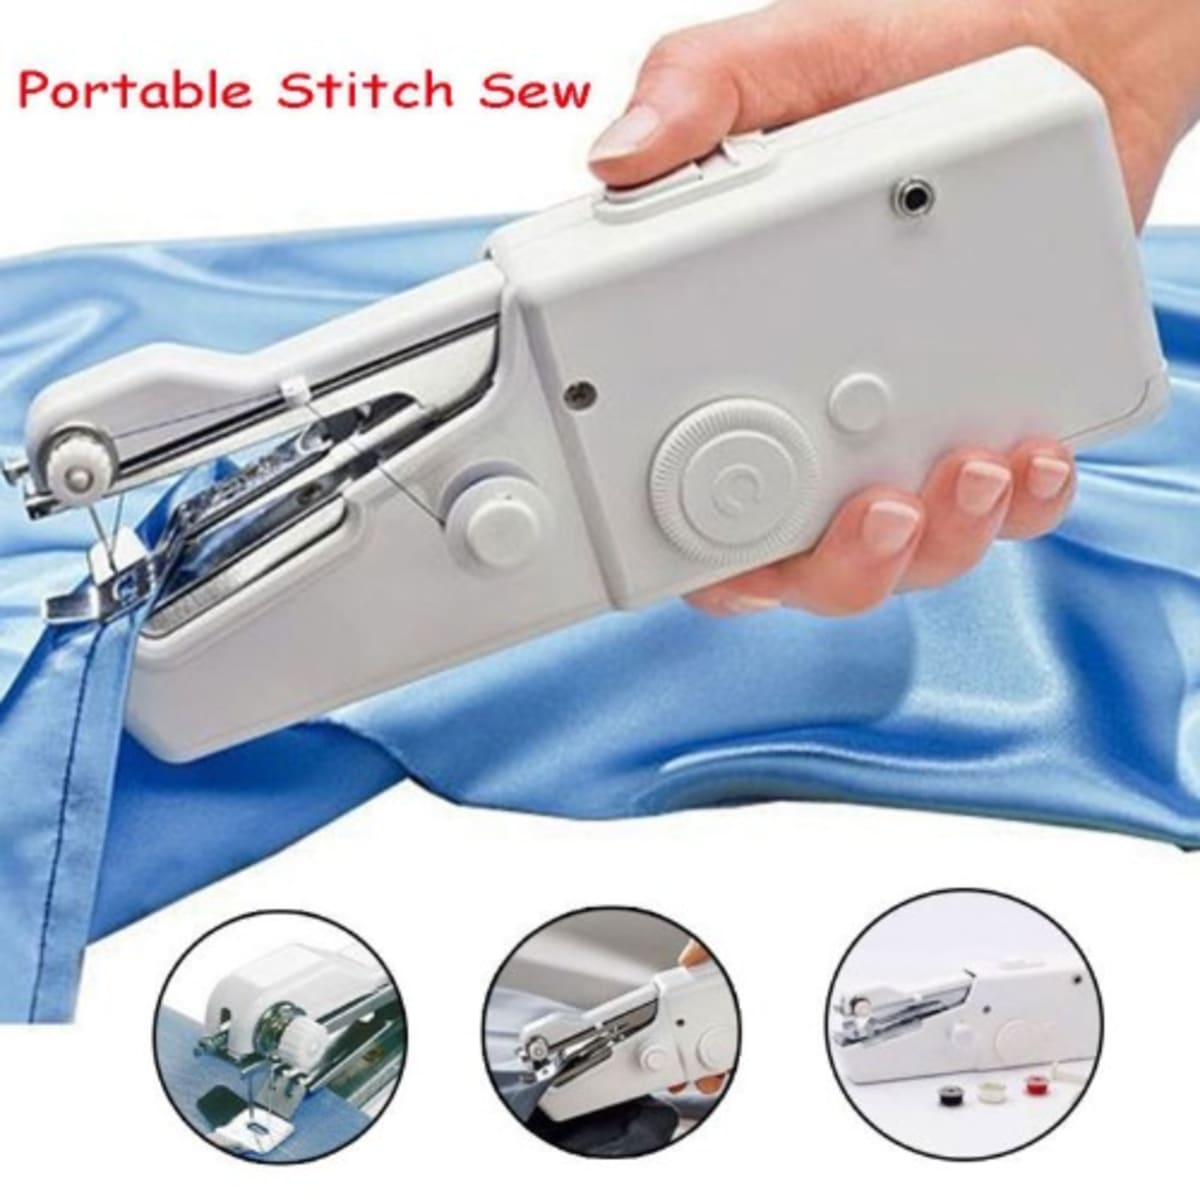 Handy Stitch-Handheld sewing machine